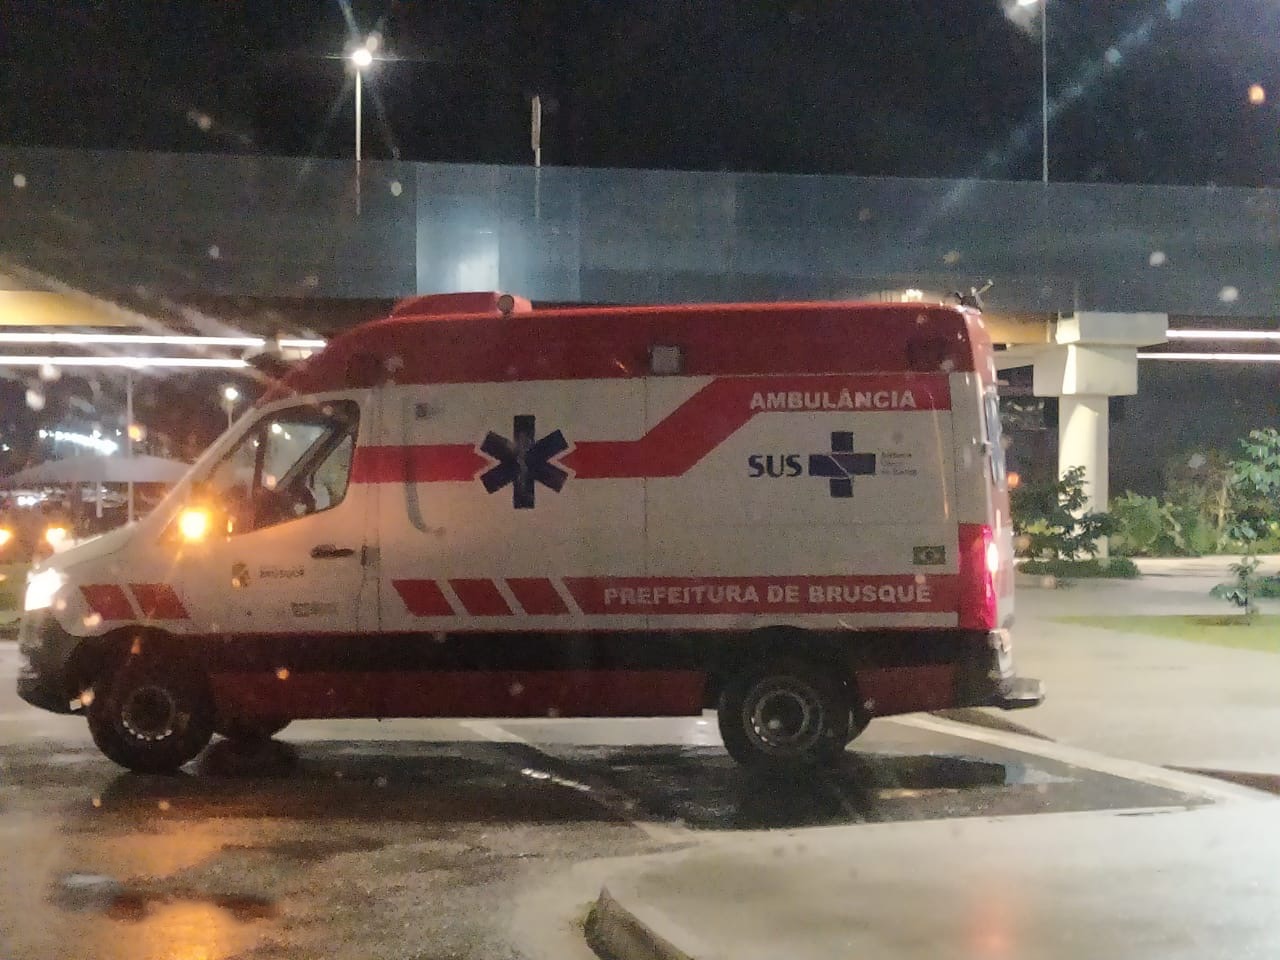 Prefeitura desmente notícia falsa sobre suposto transporte ilegal em ambulância